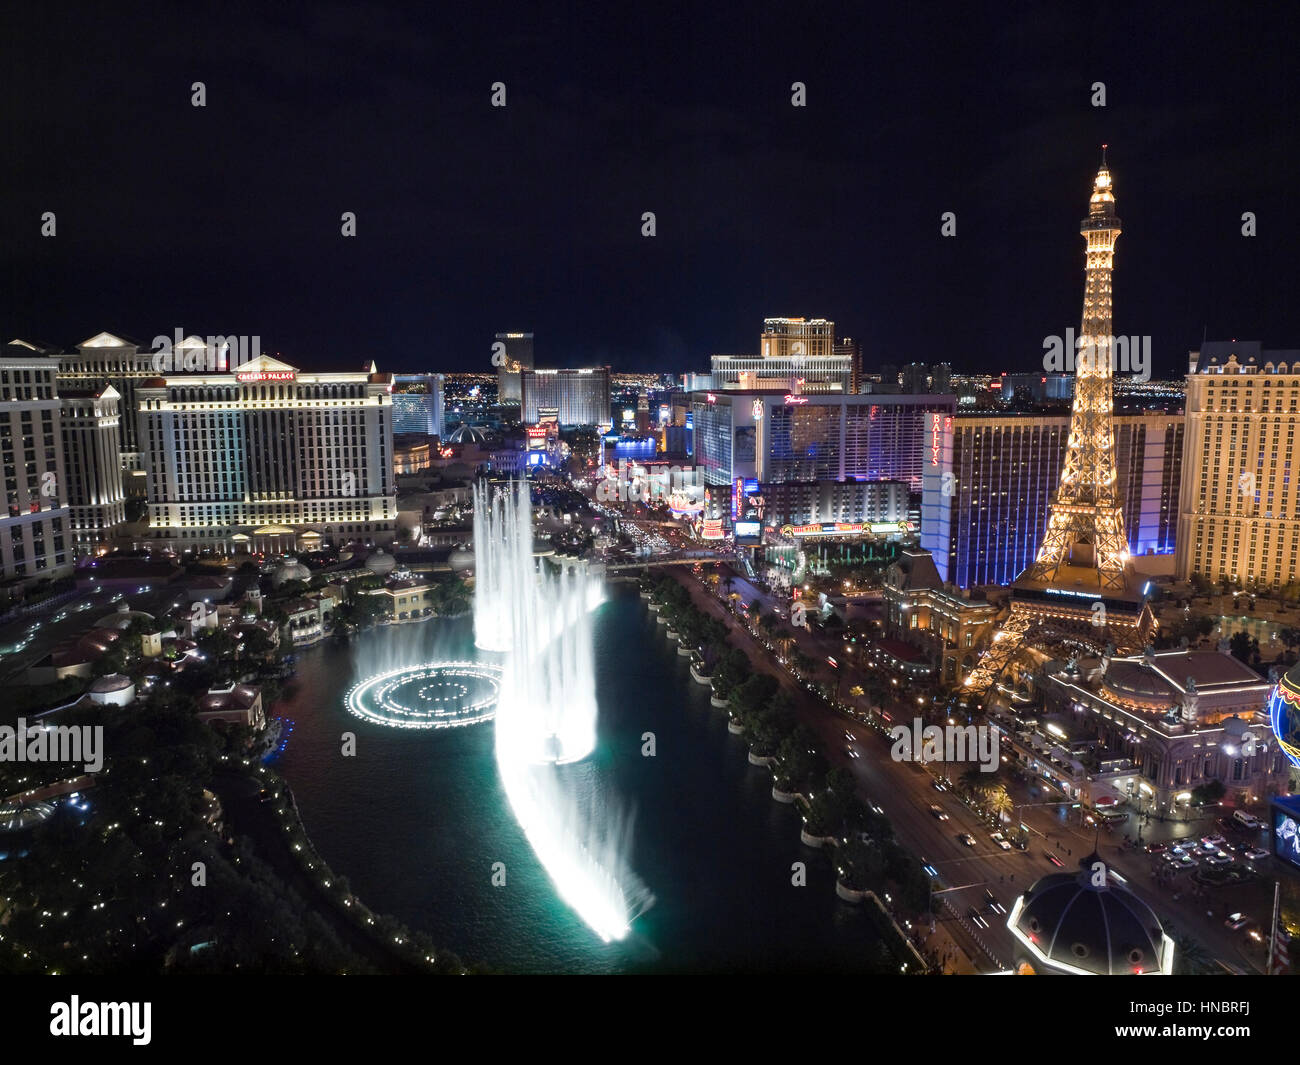 Las Vegas, Nevada, EE.UU. - Octubre 6, 2011: Vista nocturna hacia el Bellagio, Paris, Caesars Palace y otros resorts en Las Vegas strip. Foto de stock